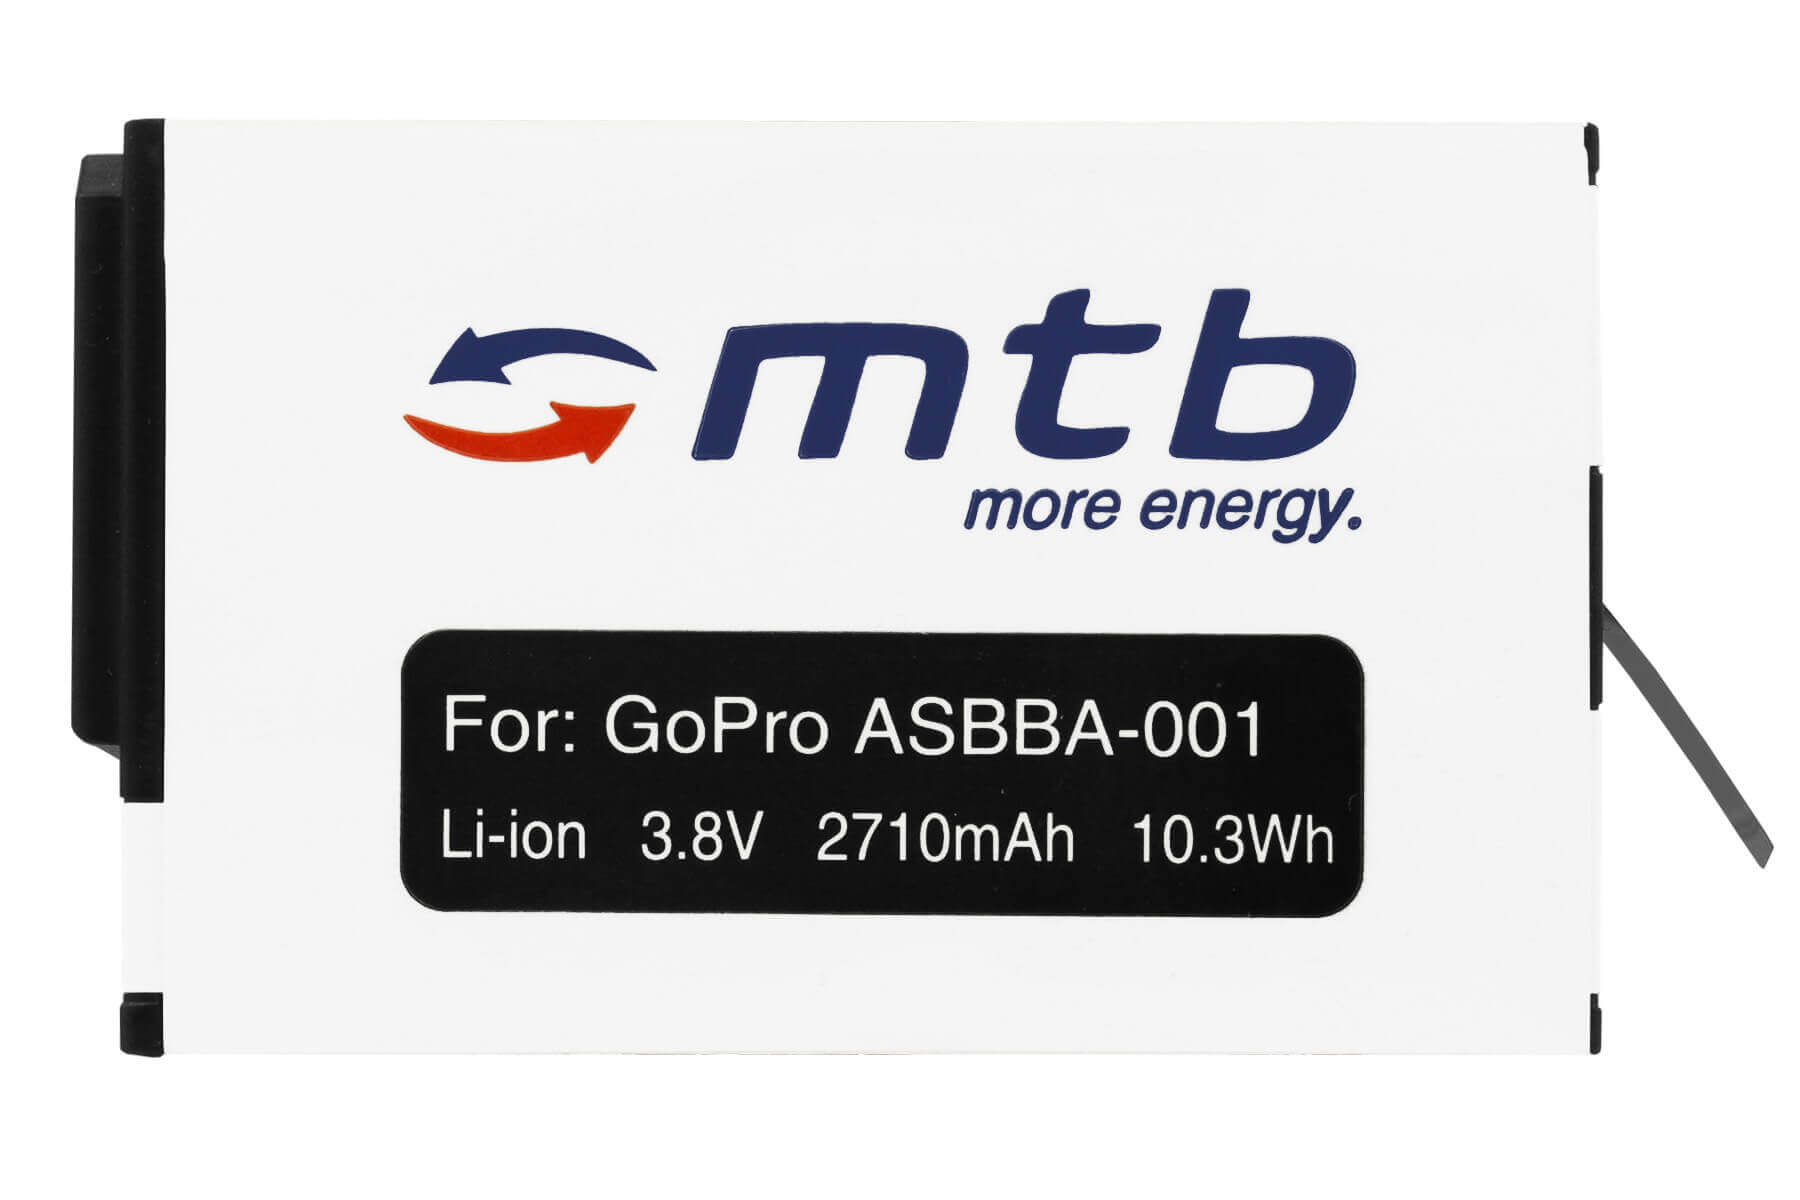 MTB MORE ENERGY BAT-483 ASBBA-001 2710 mAh Akku, Li-Ion